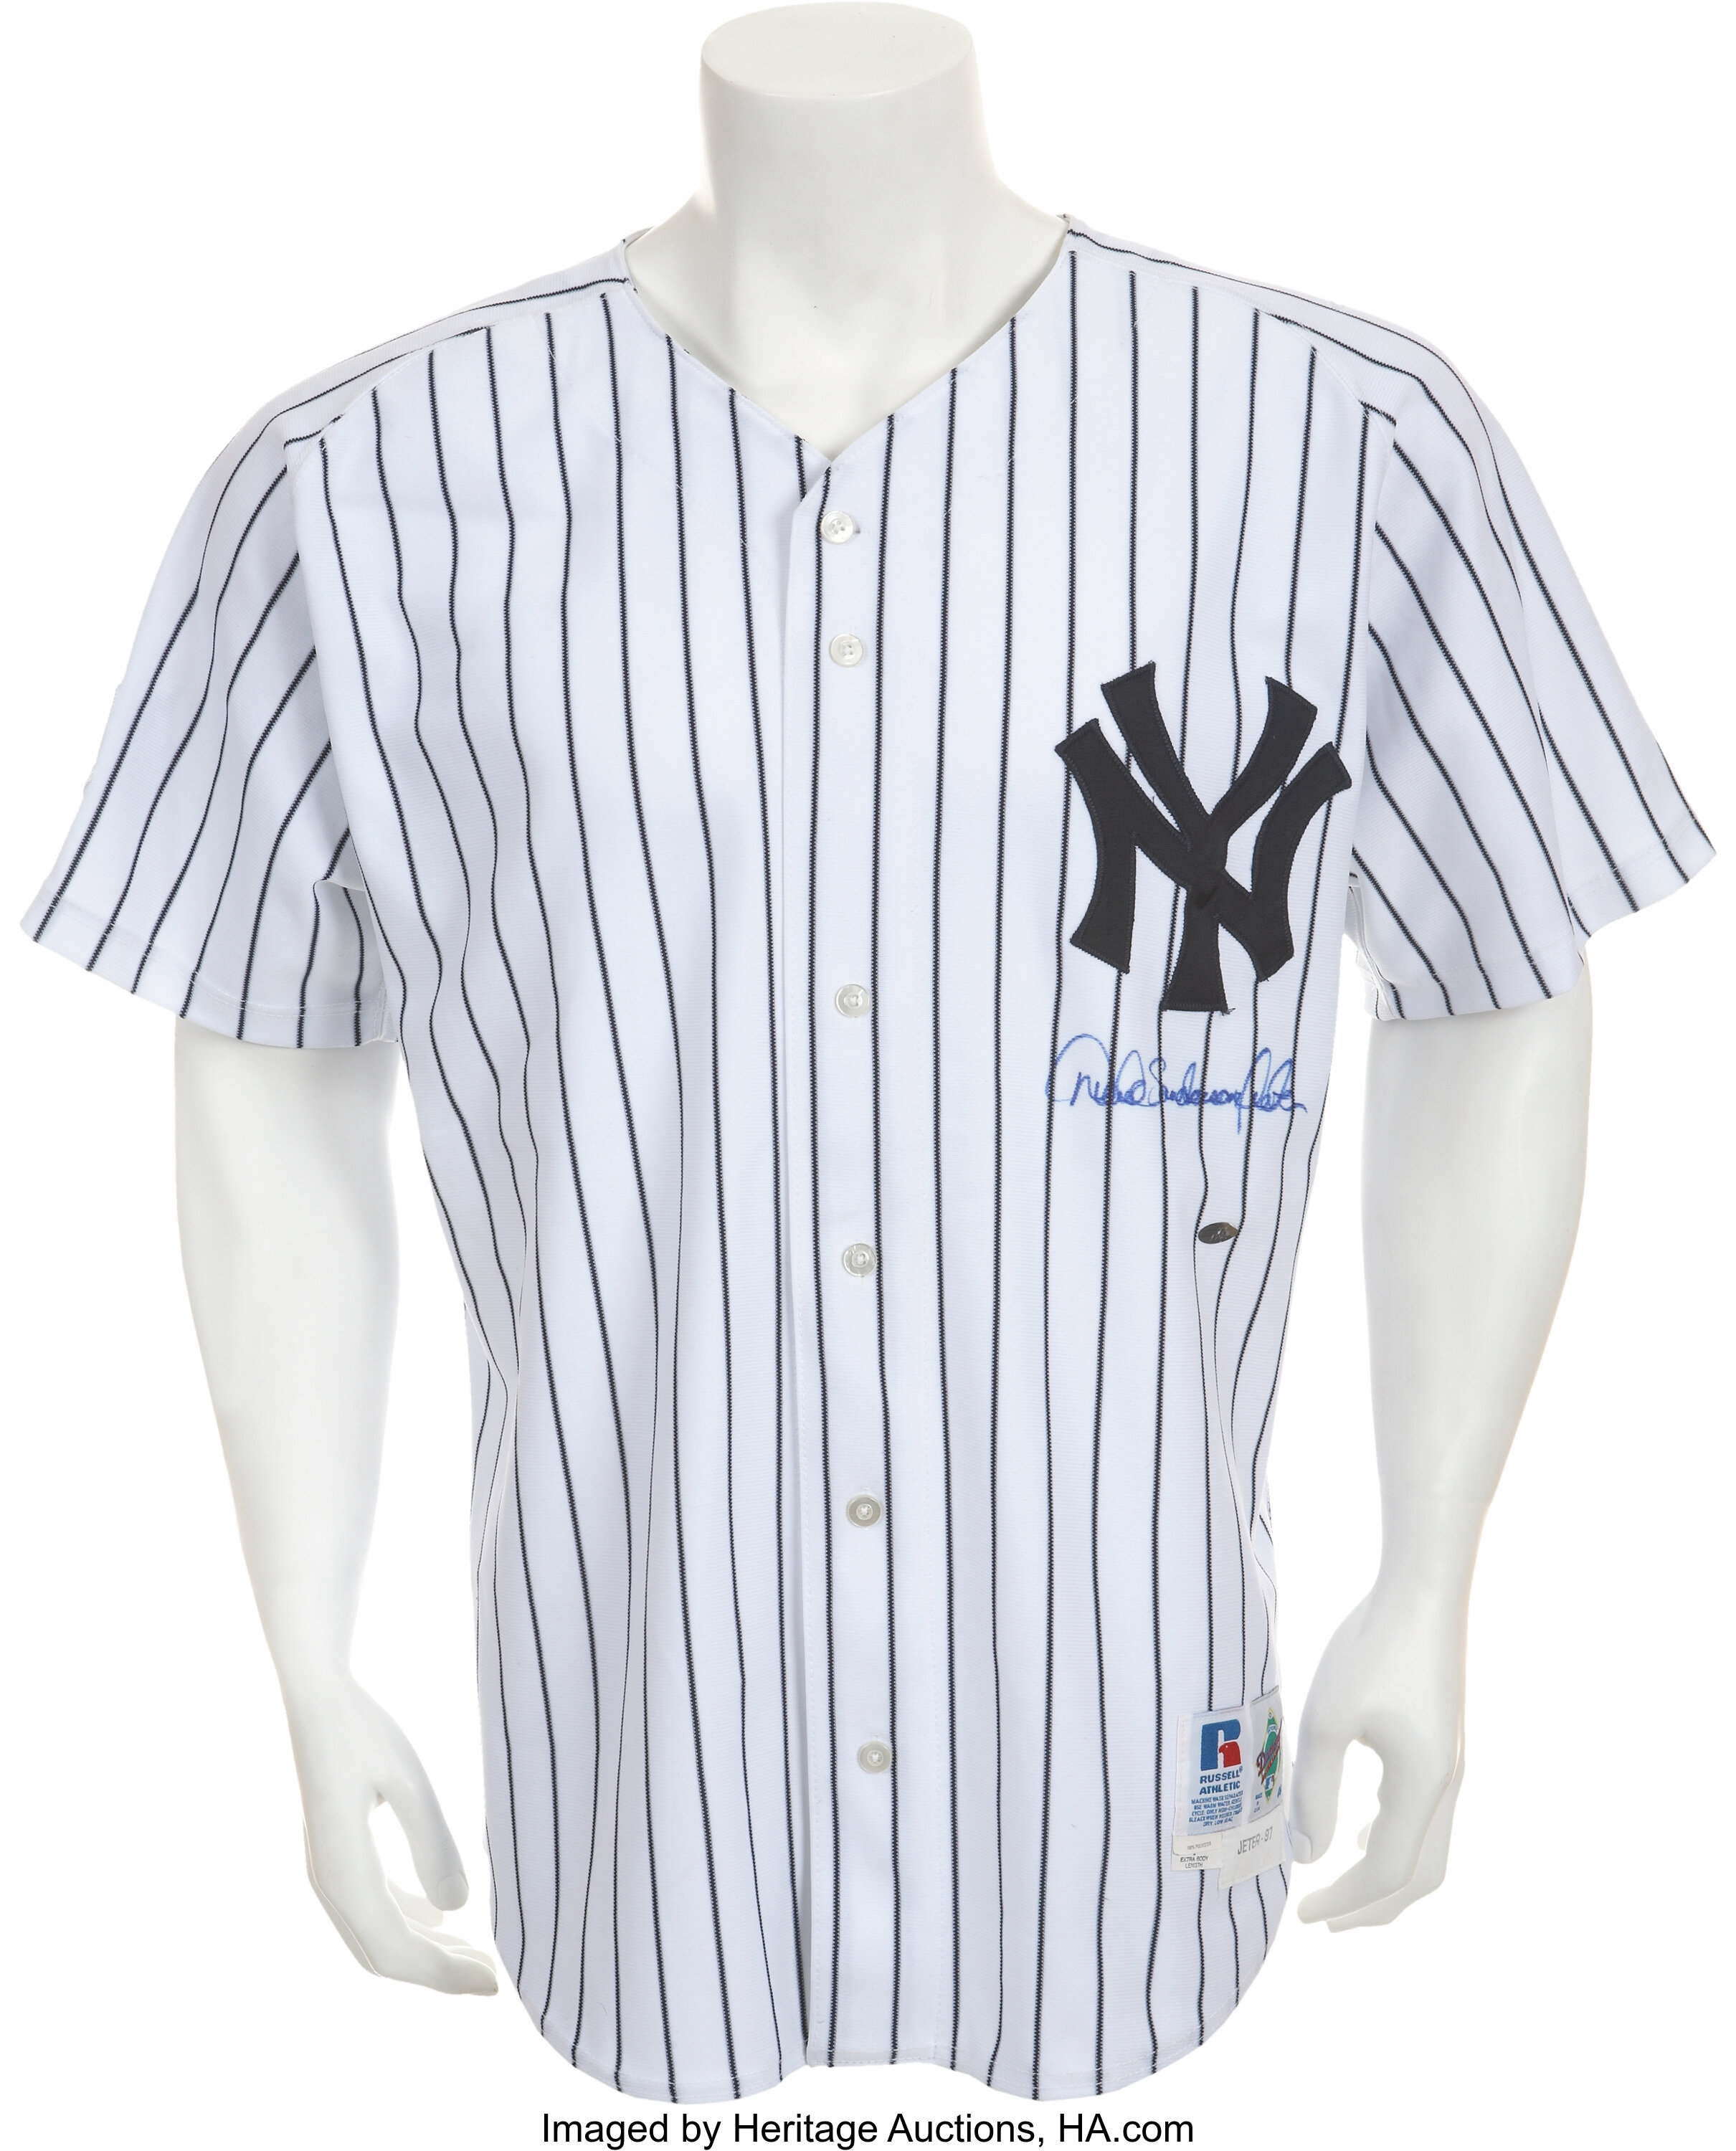 Mitchell & Ness Derek Jeter White New York Yankees 1997